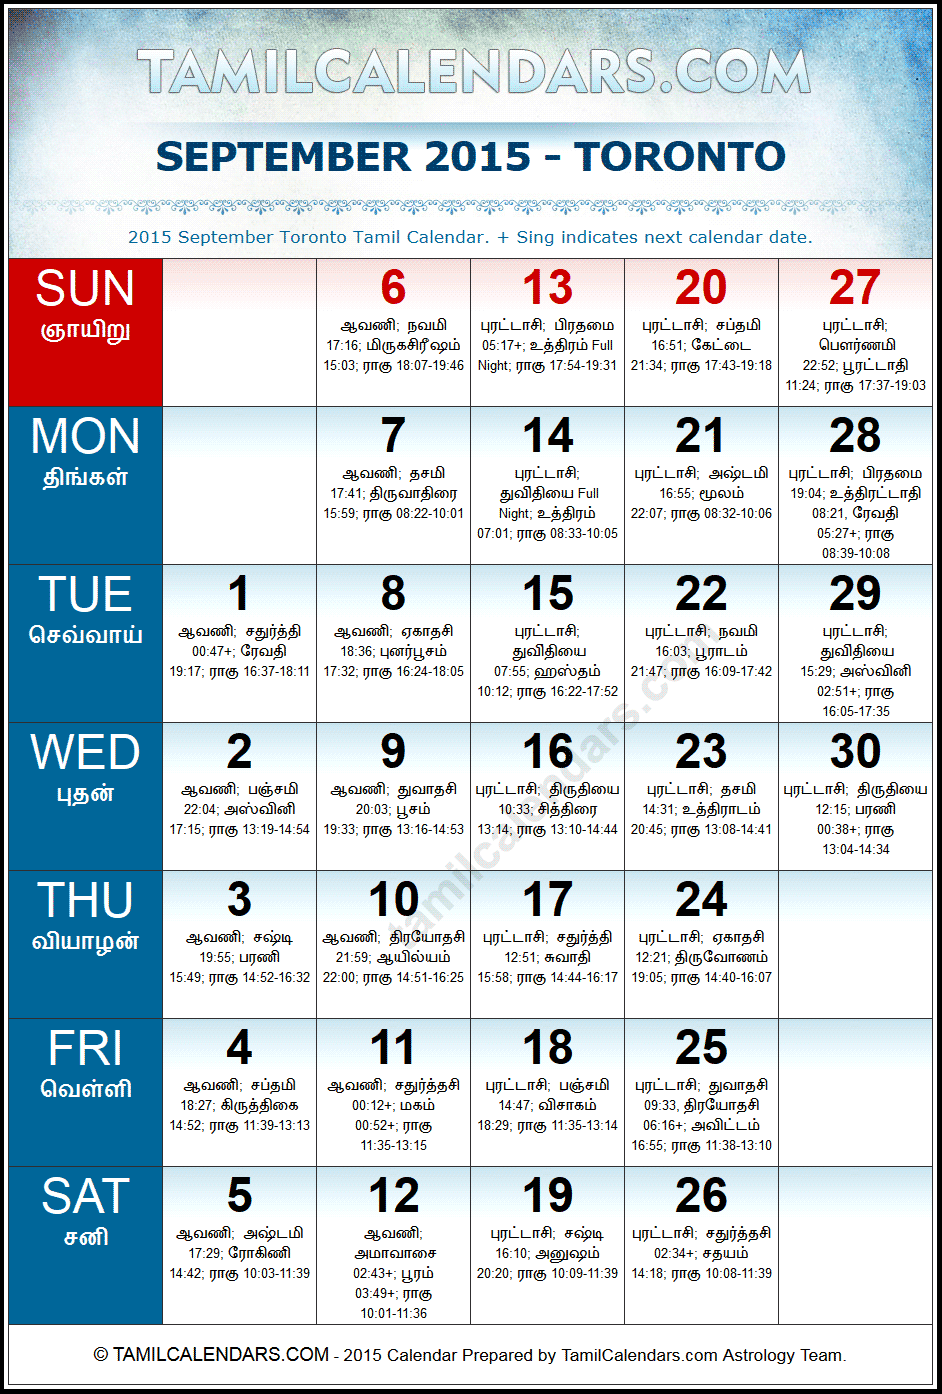 September 2015 Tamil Calendar for Toronto, Canada